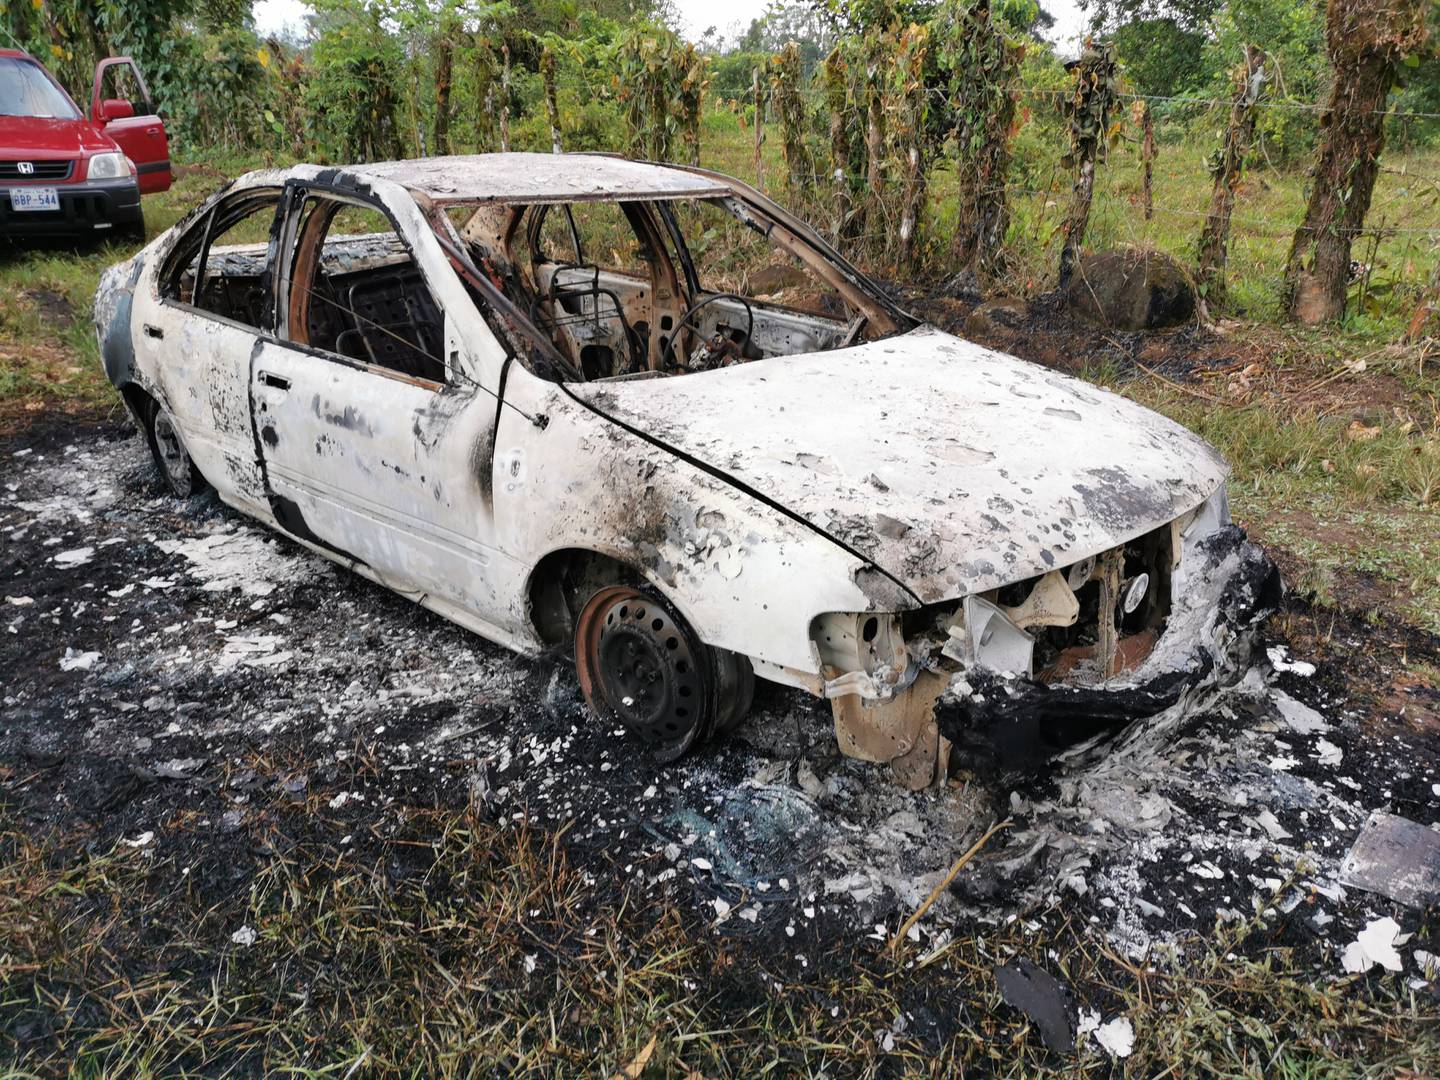 El OIJ investiga si este carro, que apareció quemado a 4 kilómetros de los apartamentos baleados, fue usado por los pistoleros para escapar del sitio. Foto: Reiner Montero.